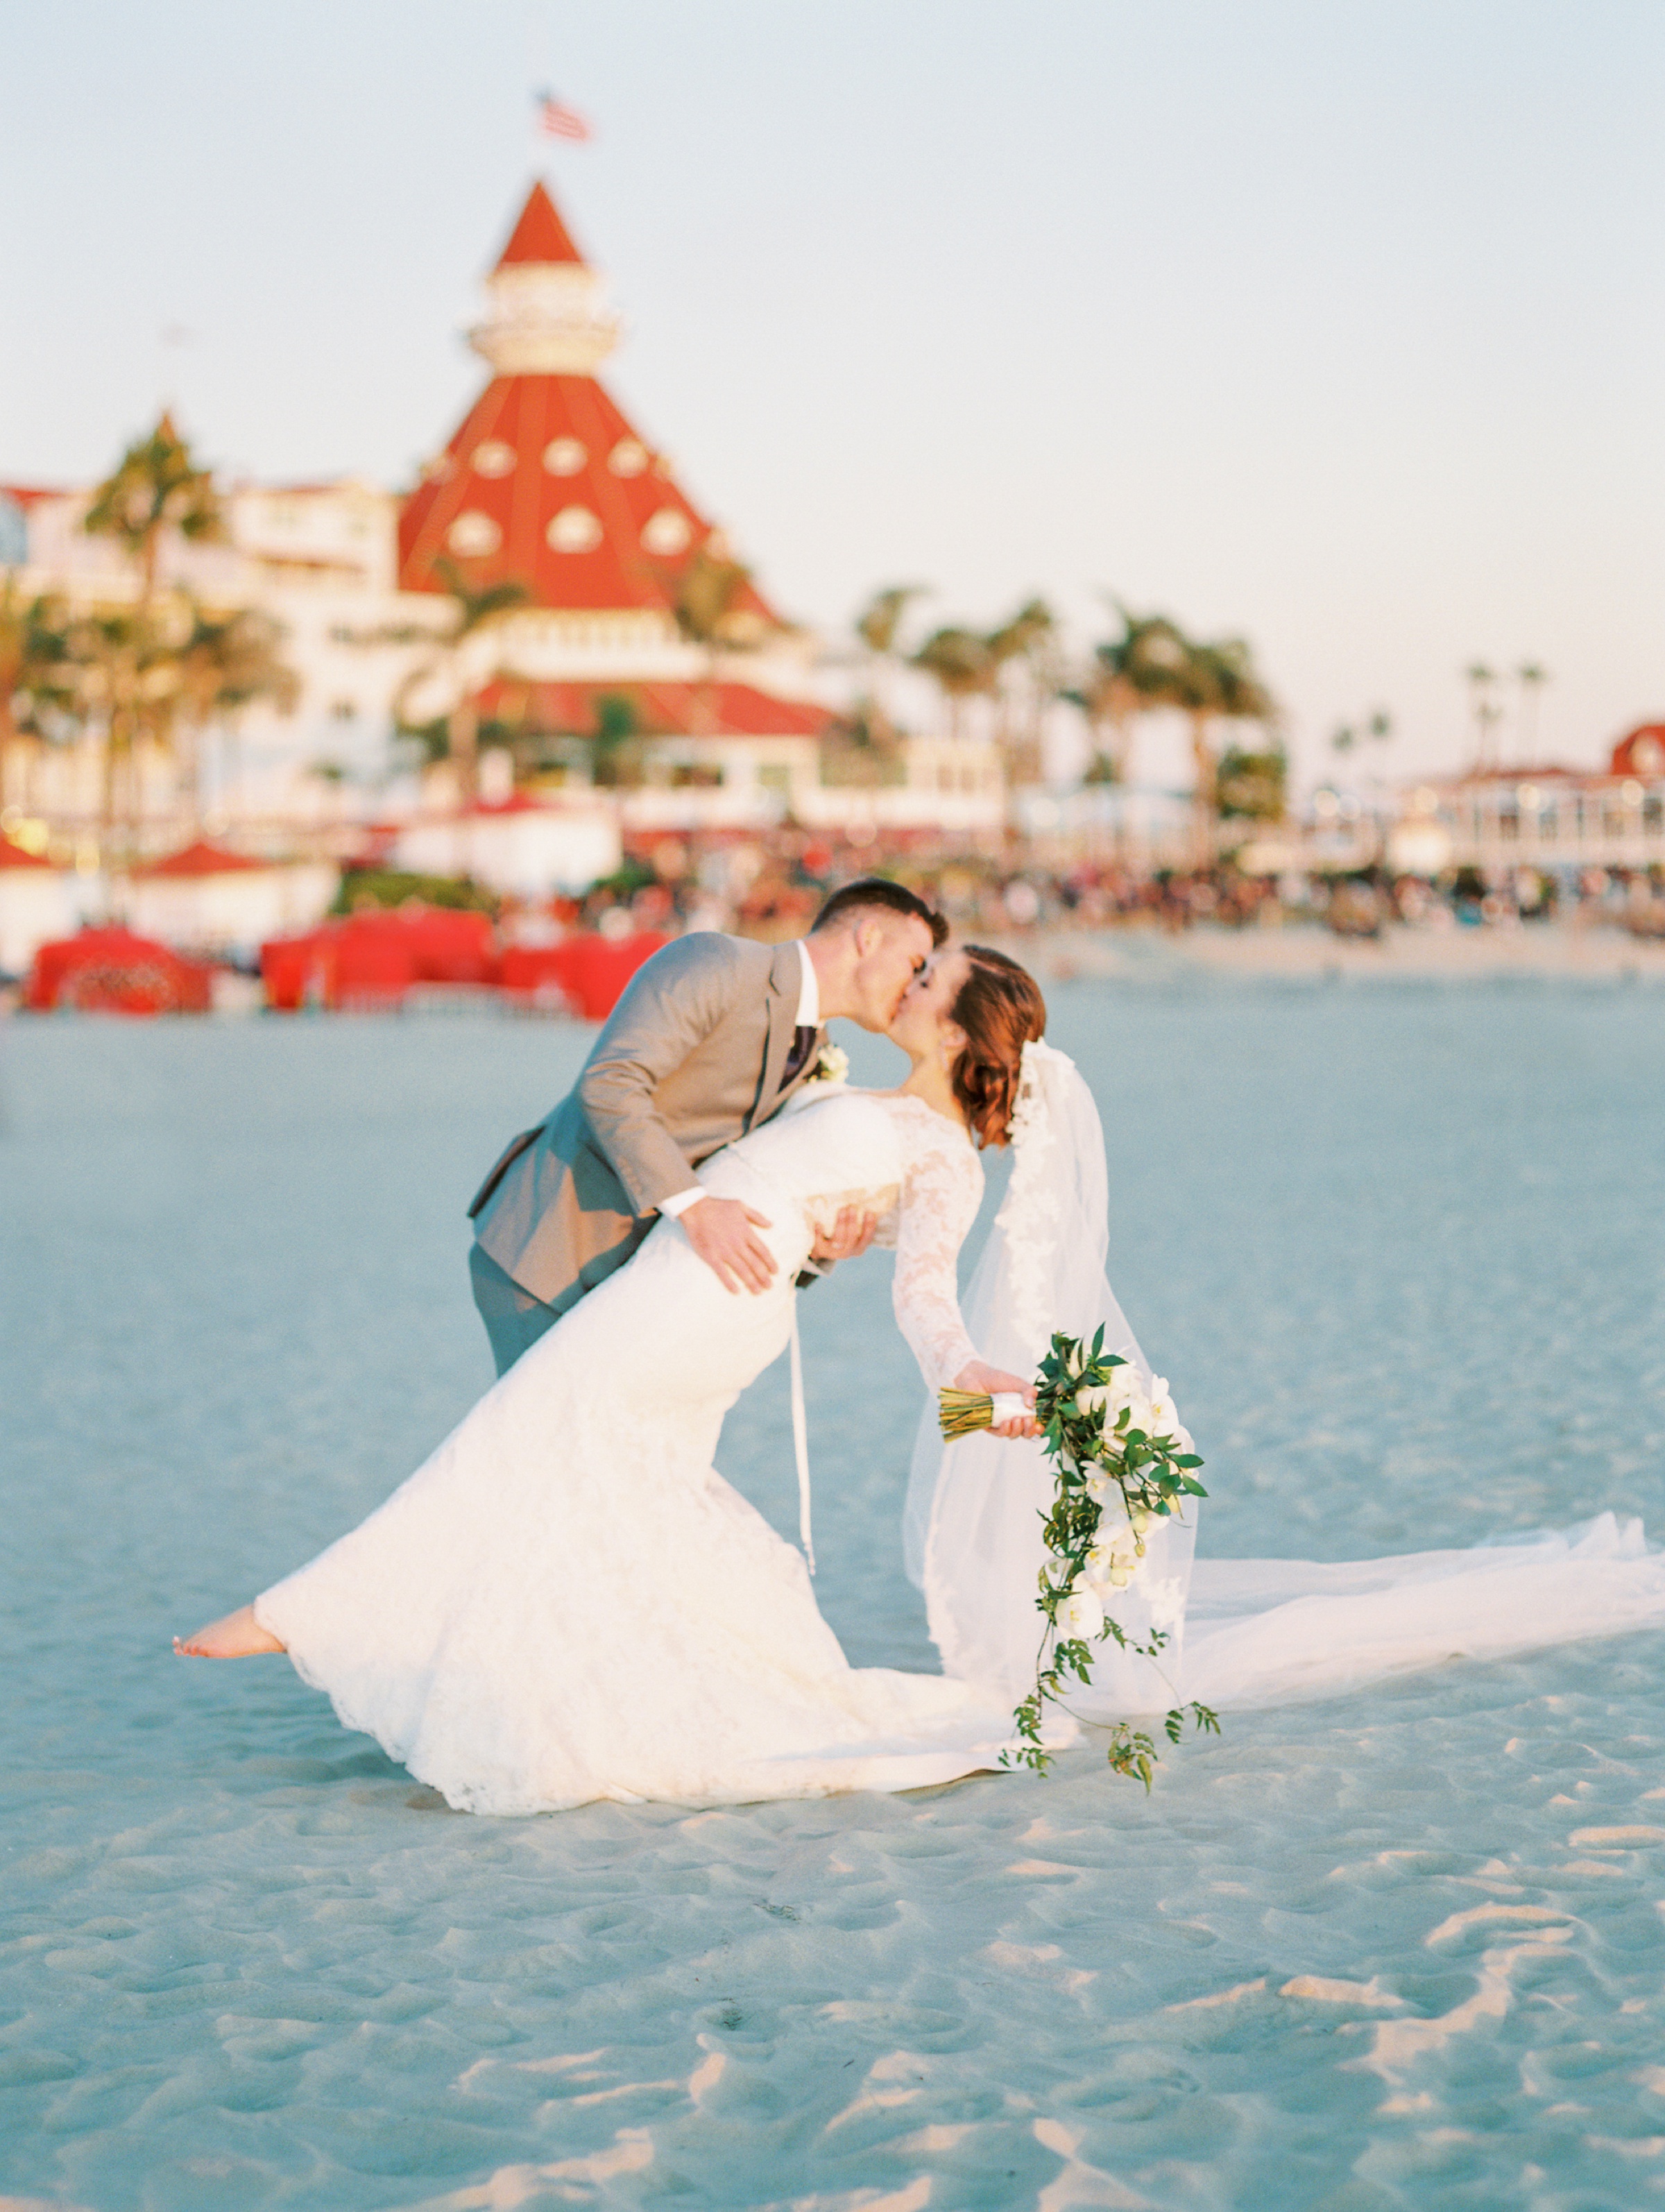 Hotel Del Coronado Wedding On The Beach In San Diego